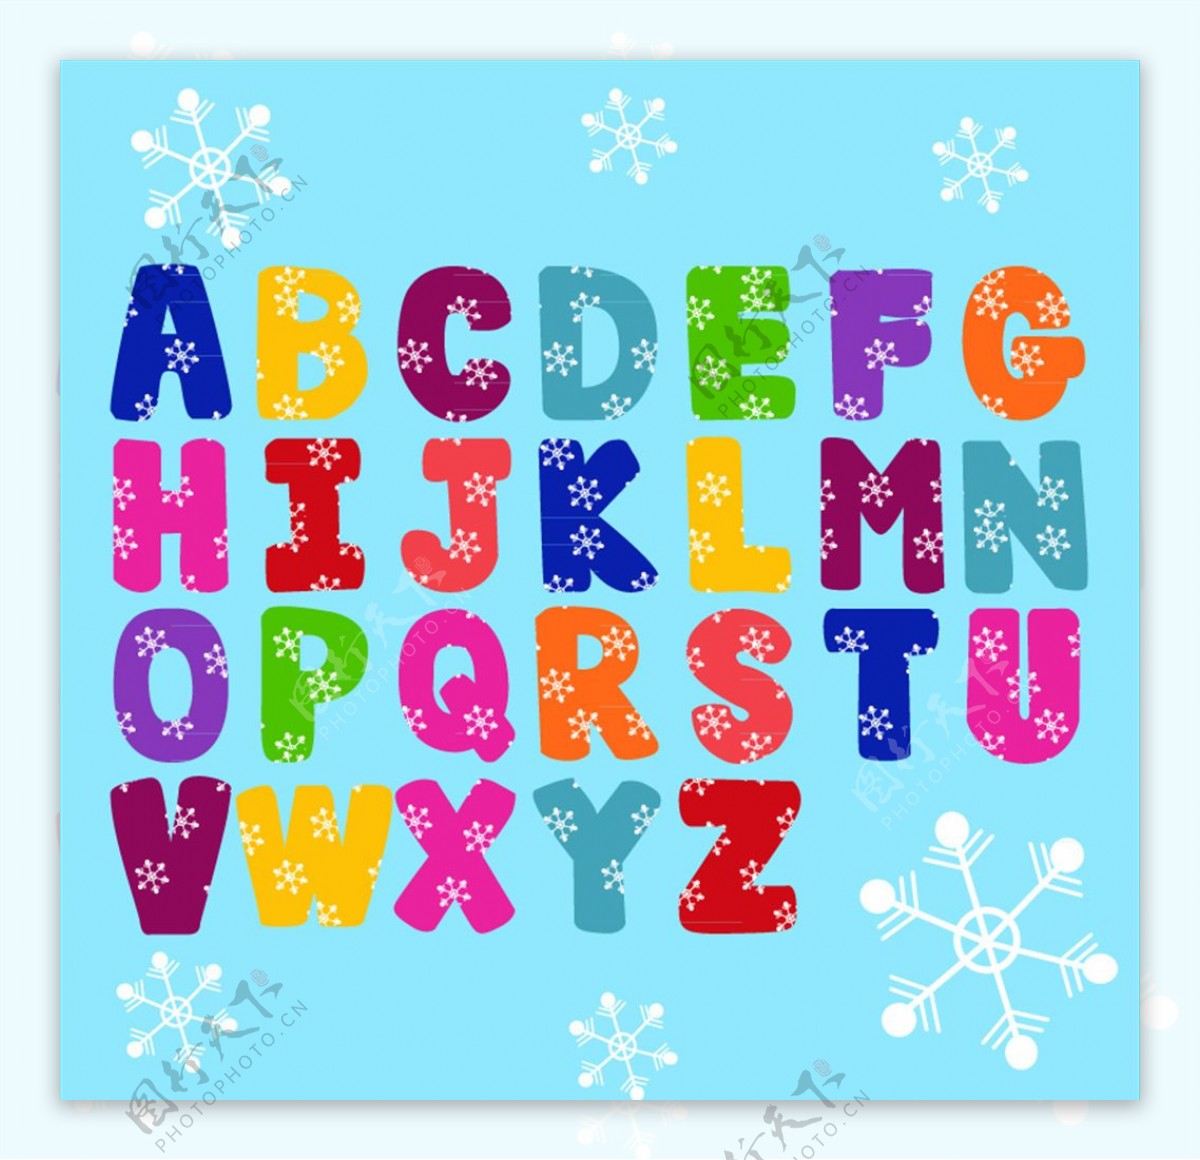 26个彩色雪花纹装饰字母矢量图